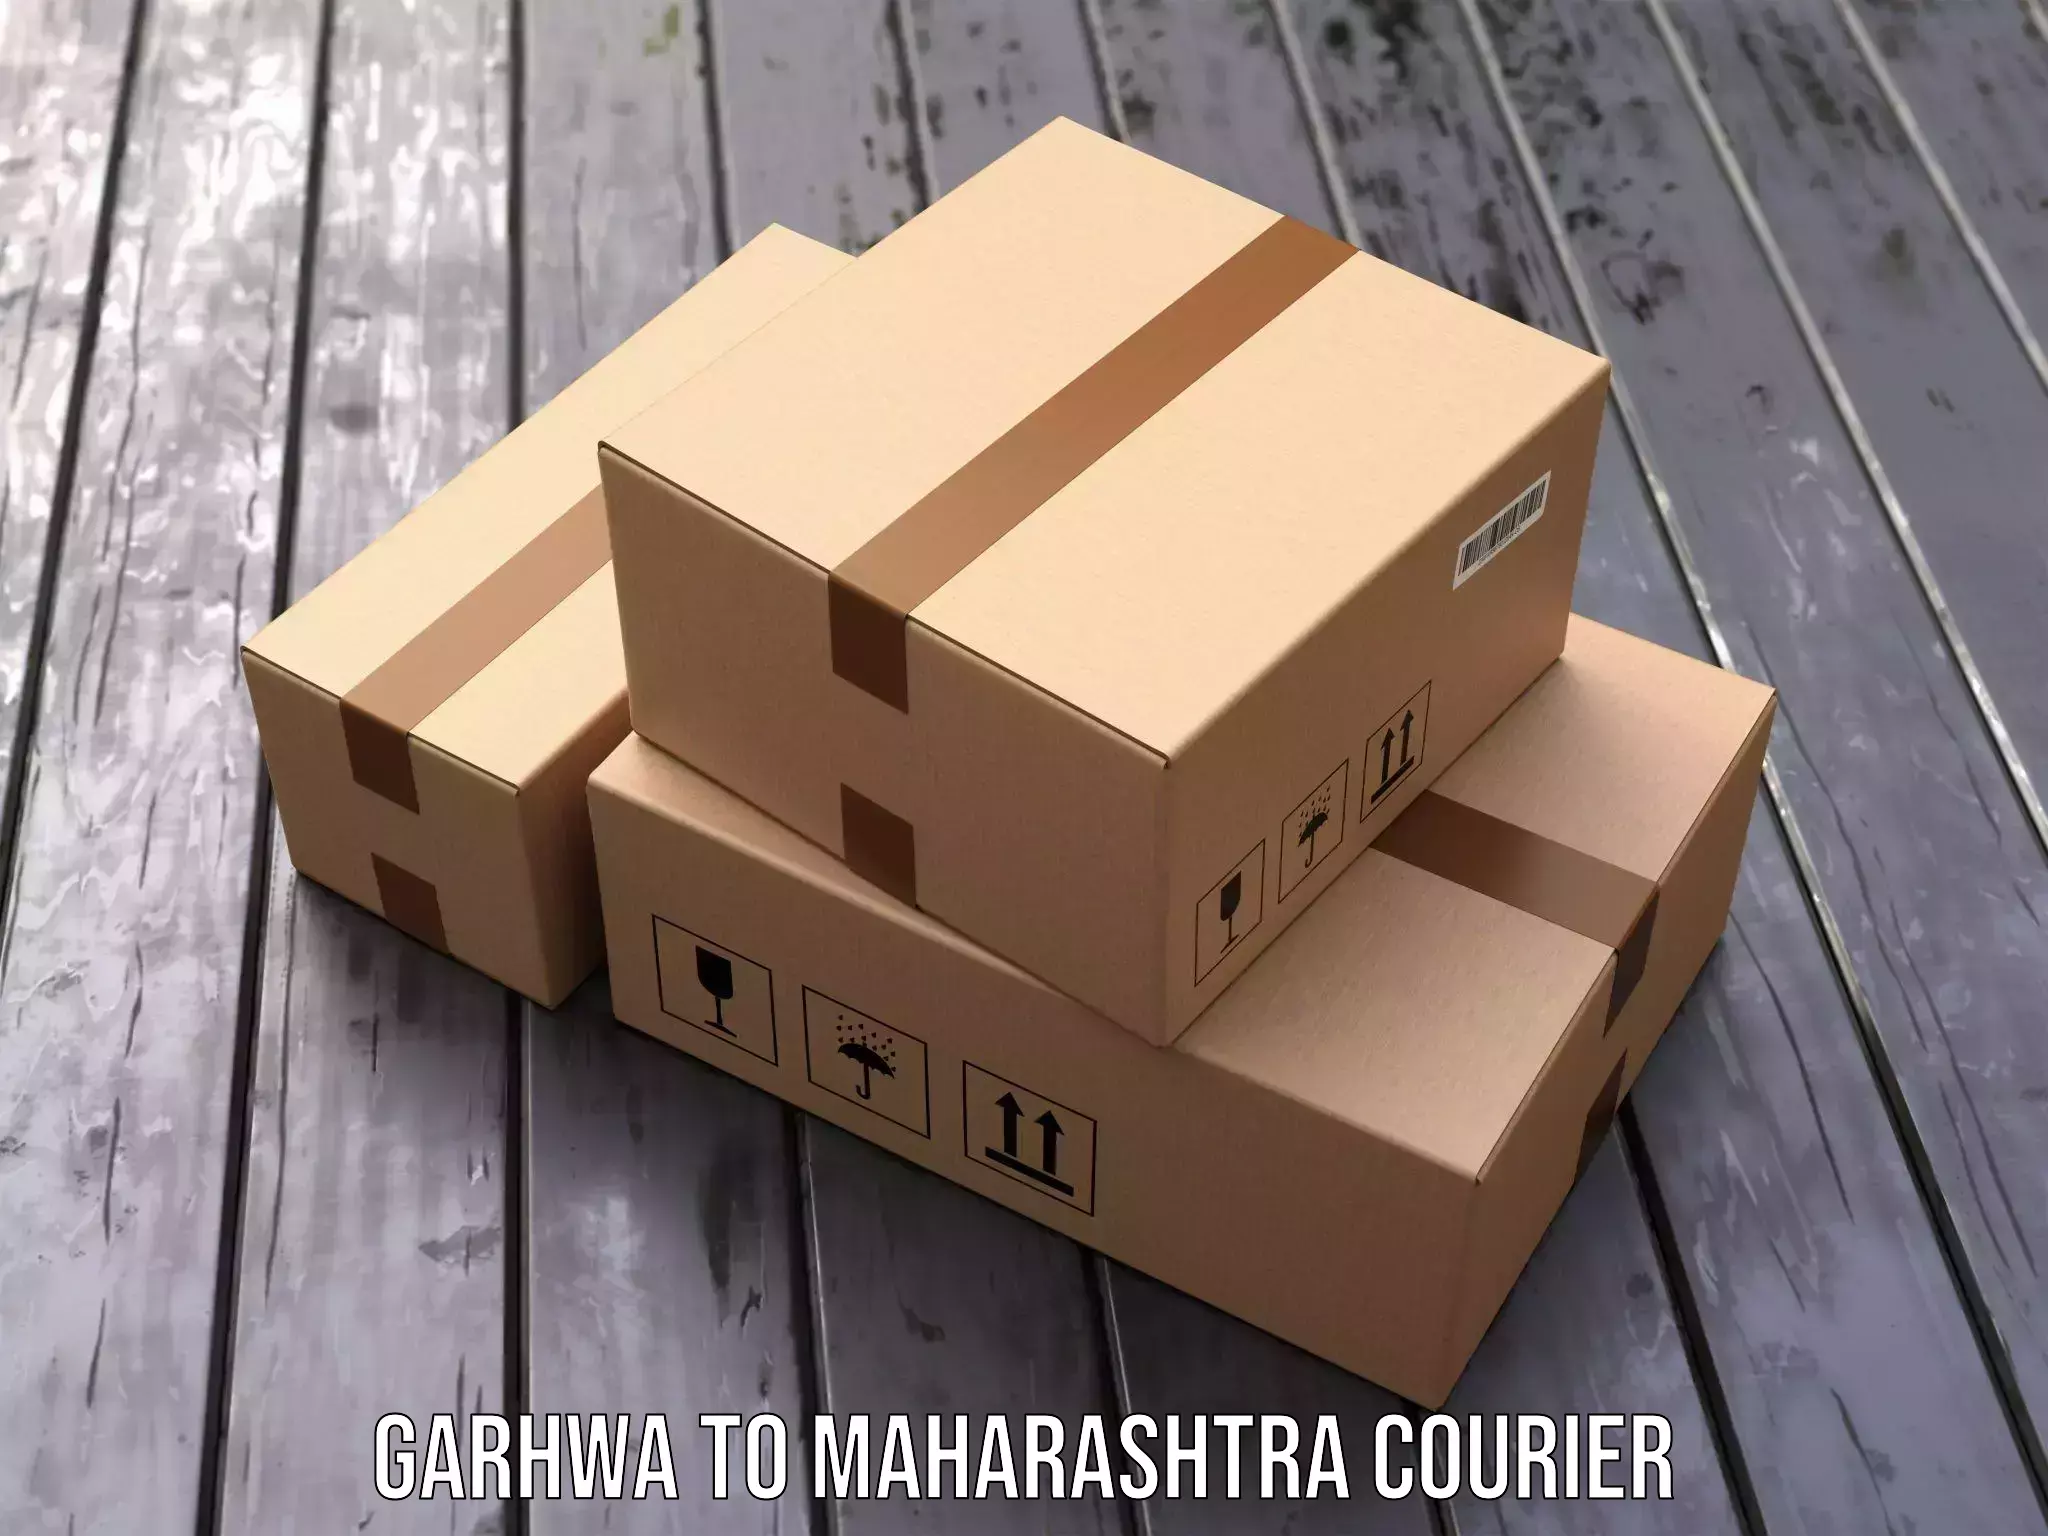 Reliable courier service Garhwa to Shrigonda